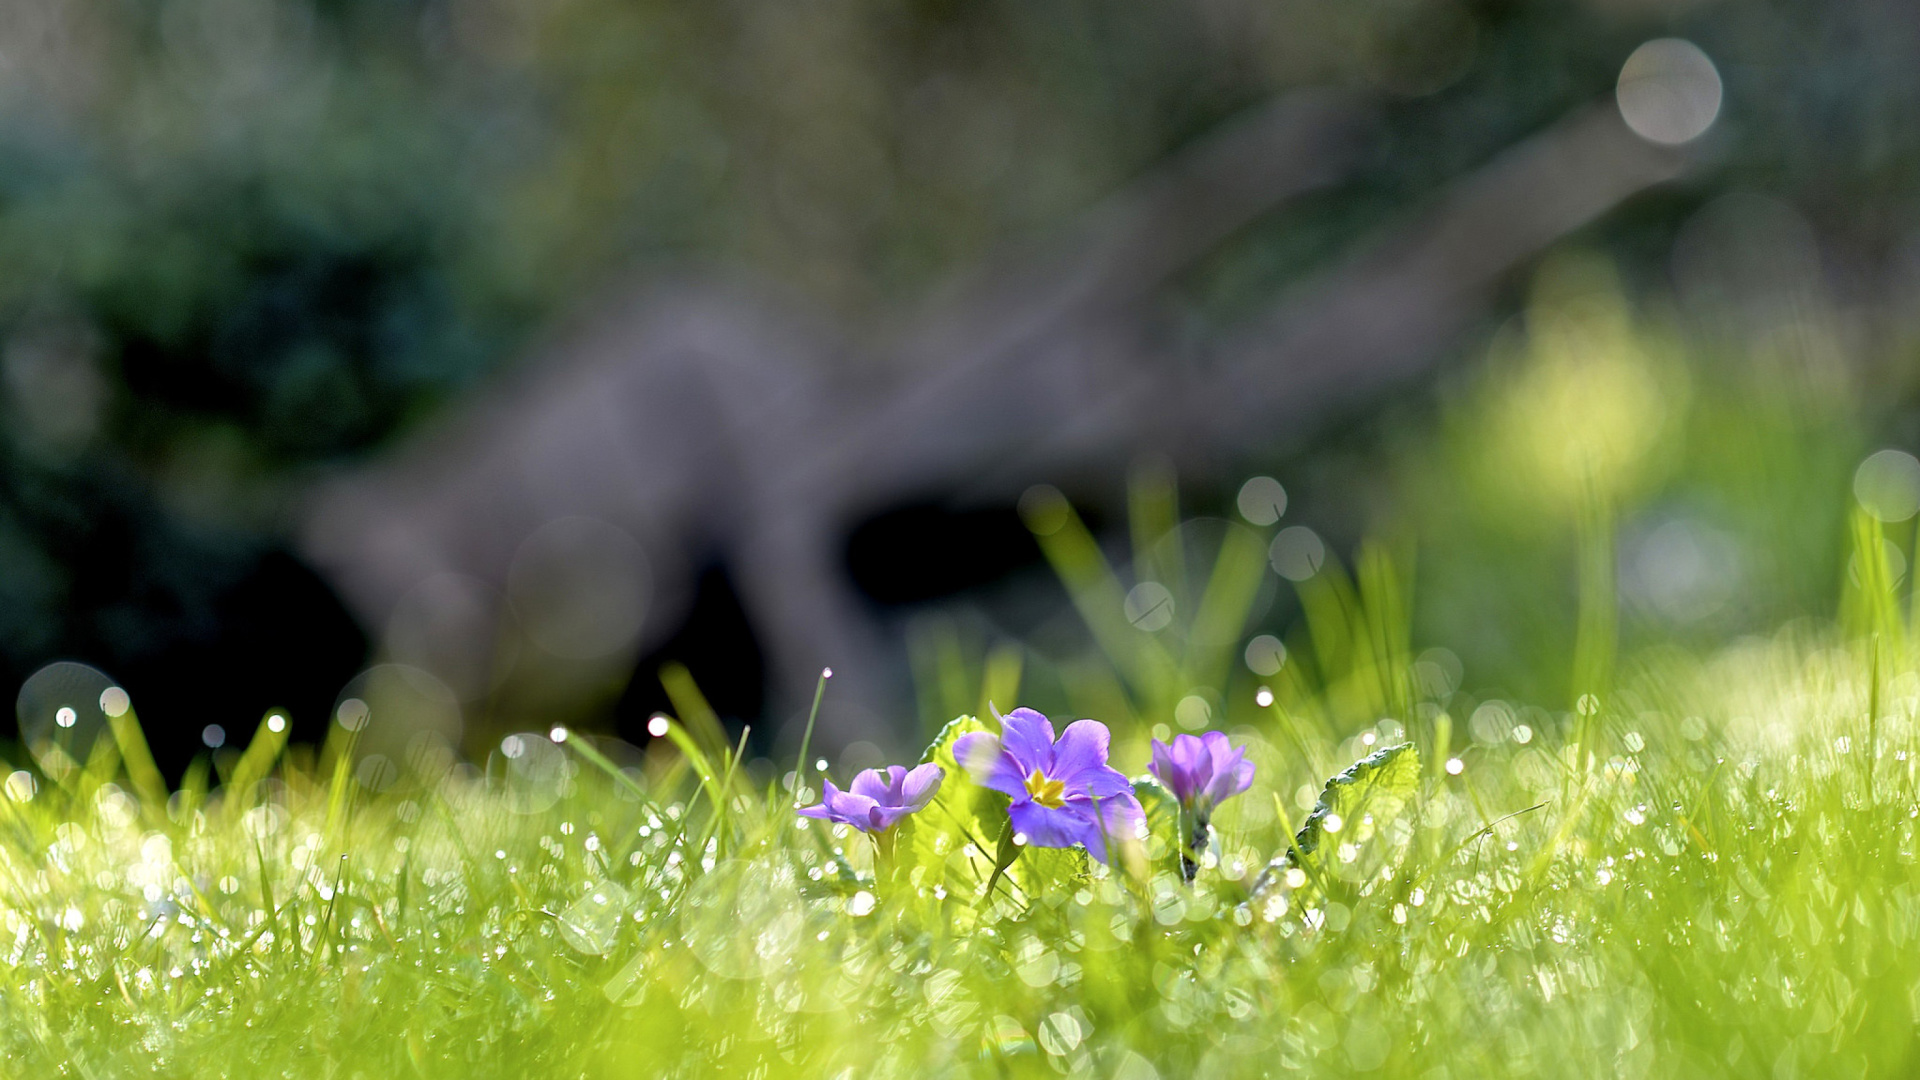 Grass and lilac flower screenshot #1 1920x1080